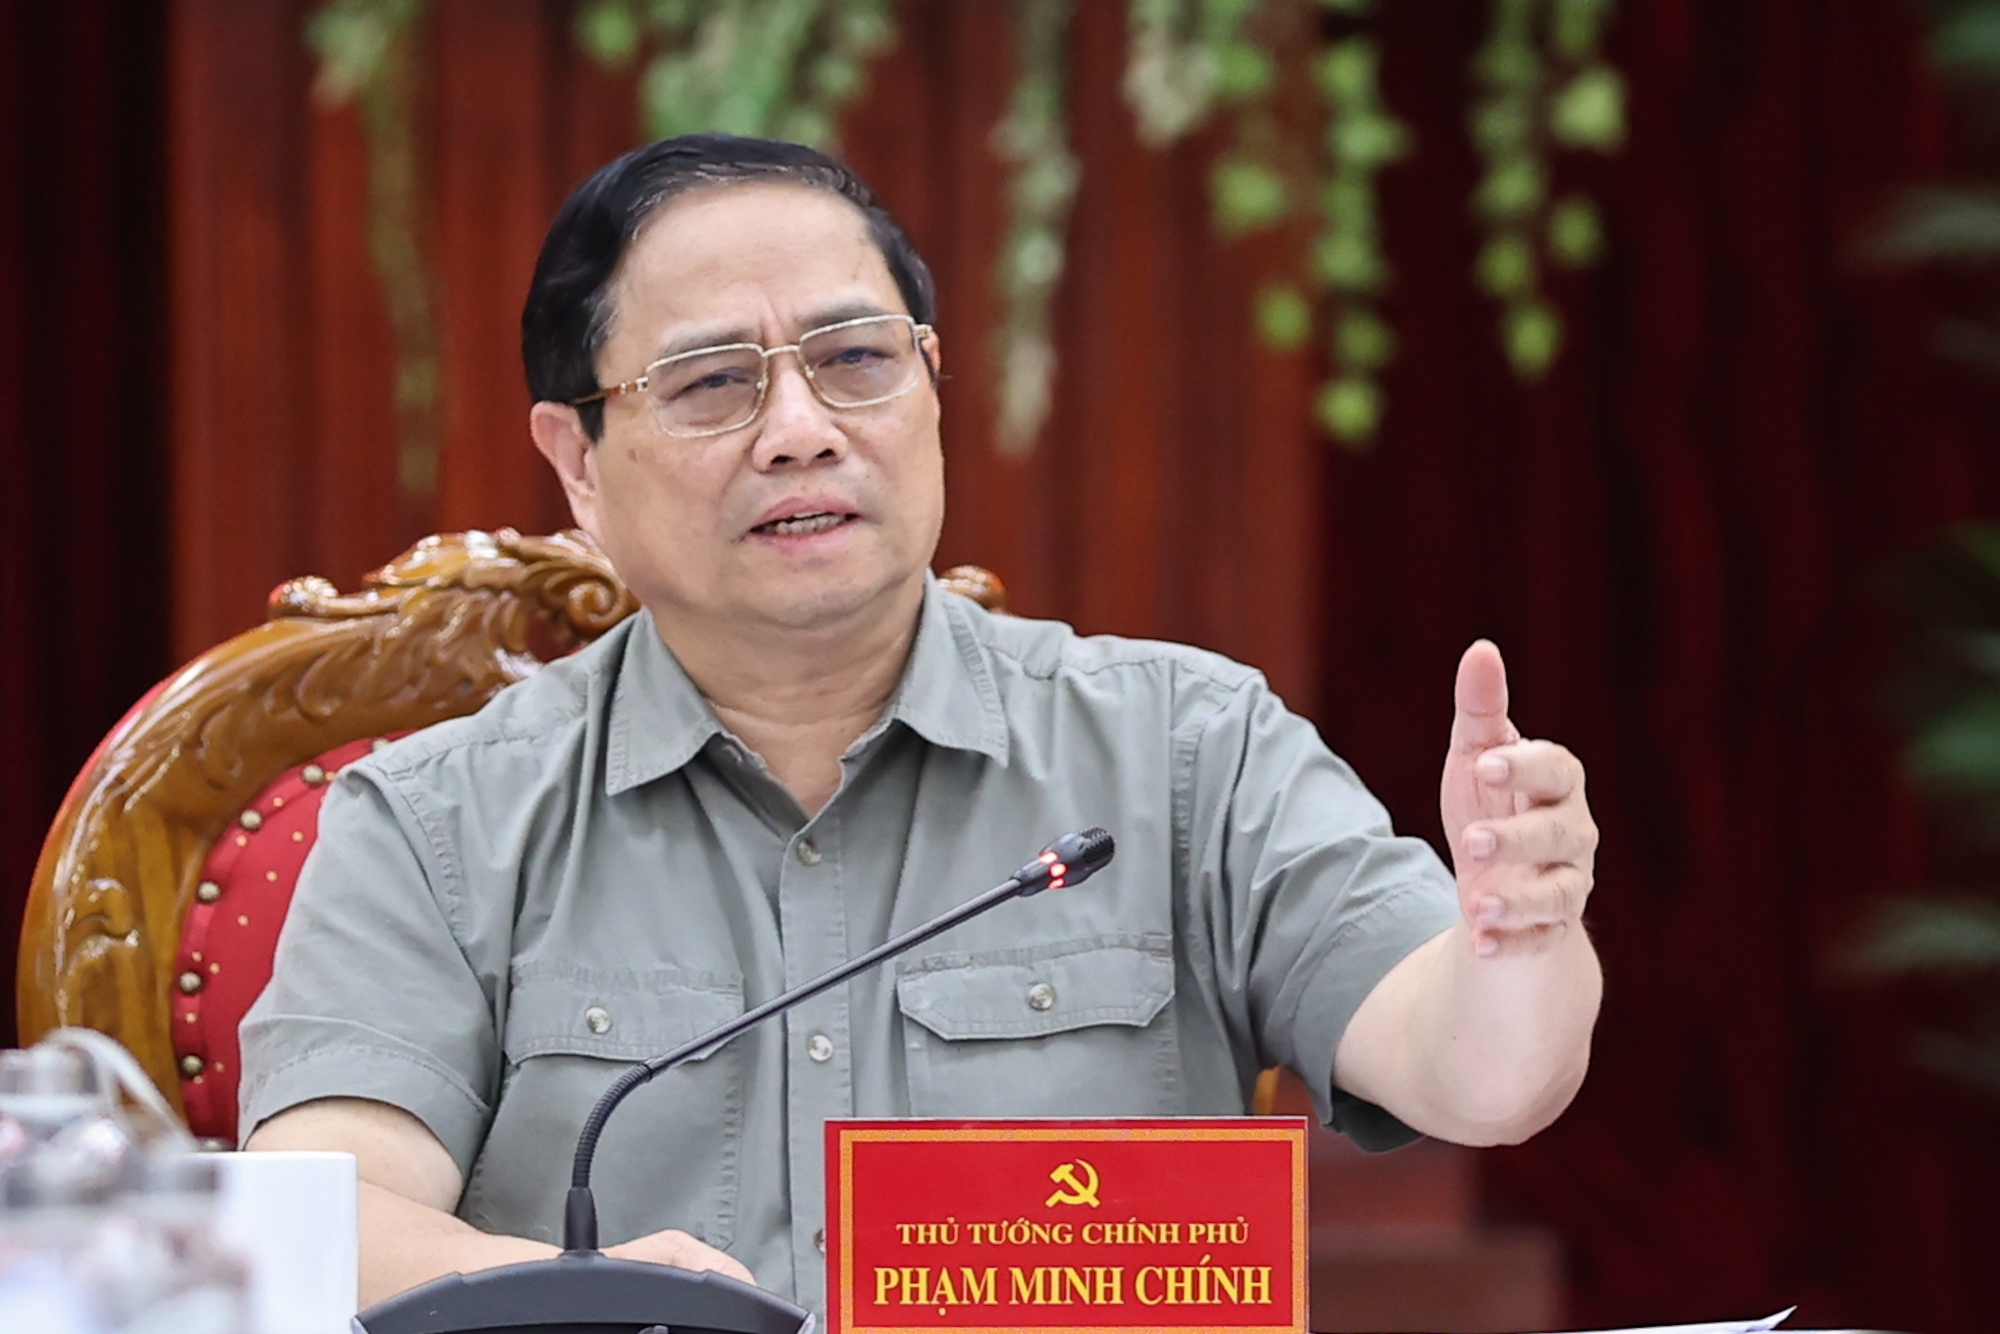 Thủ tướng Phạm Minh Chính nhấn mạnh việc xây dựng Thanh Hóa trở thành tỉnh kiểu mẫu như Bác Hồ hằng mong muốn - Ảnh: VGP/Nhật Bắc